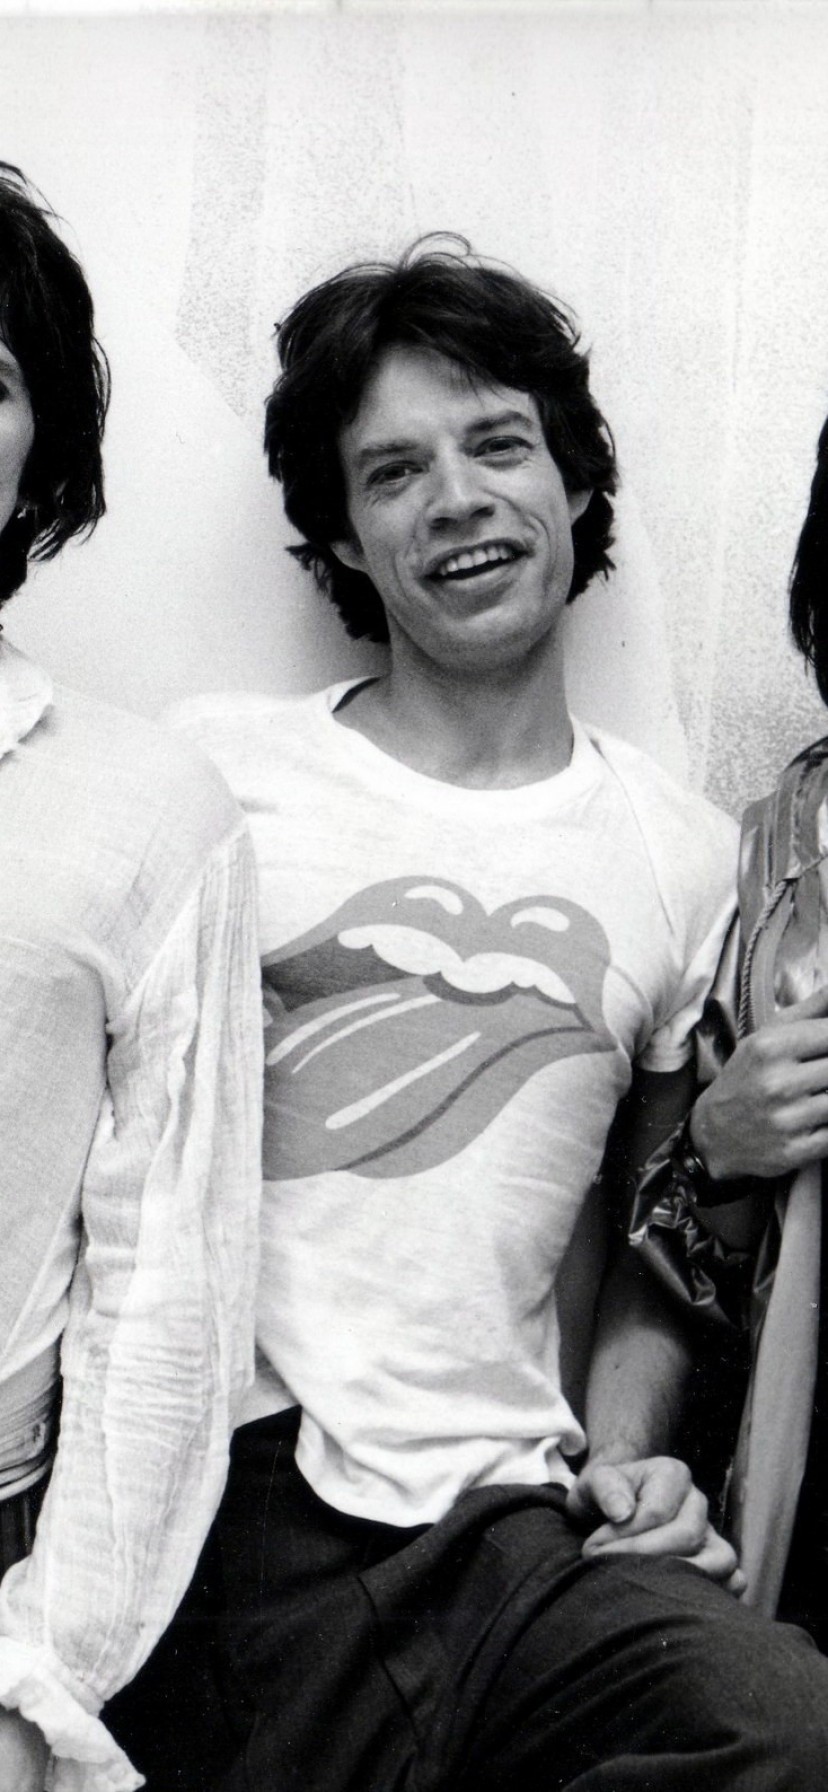 Mick Jagger Wallpaper